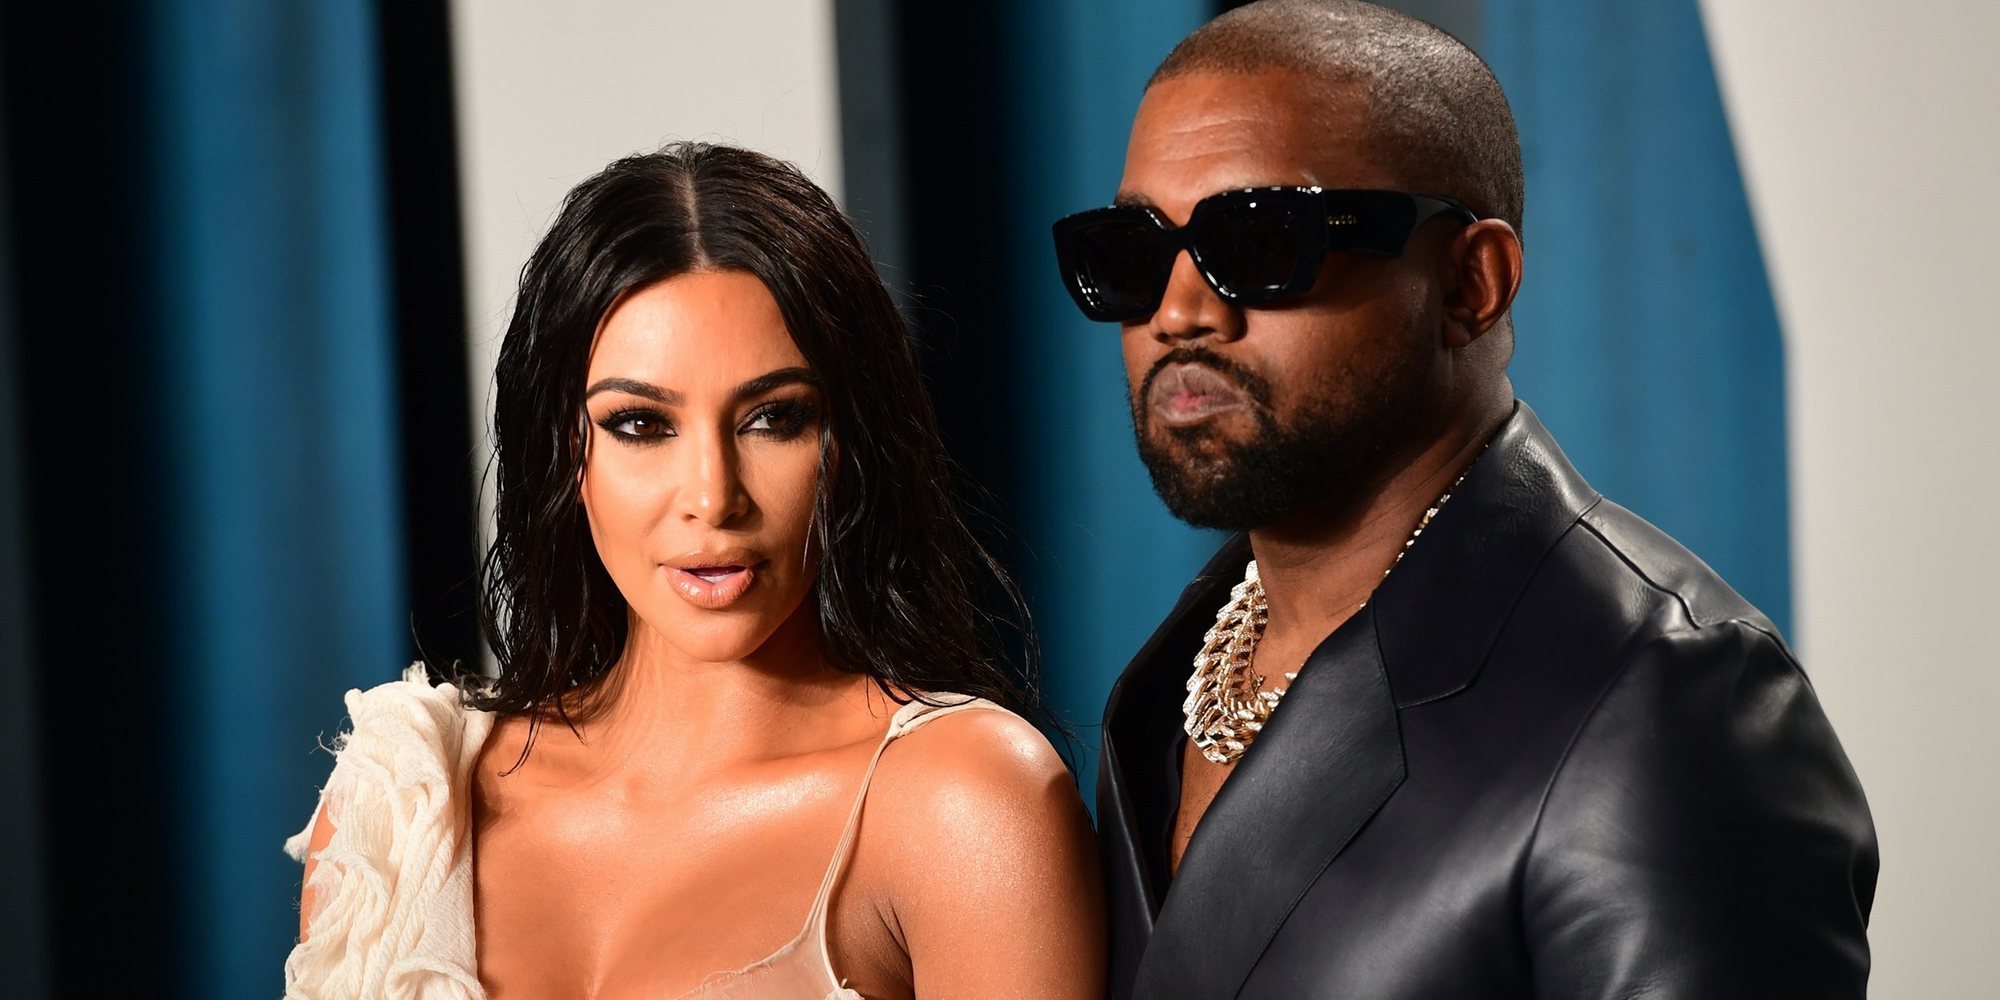 Esta es la respuesta de Kanye West a la demanda de divorcio de Kim Kardashian